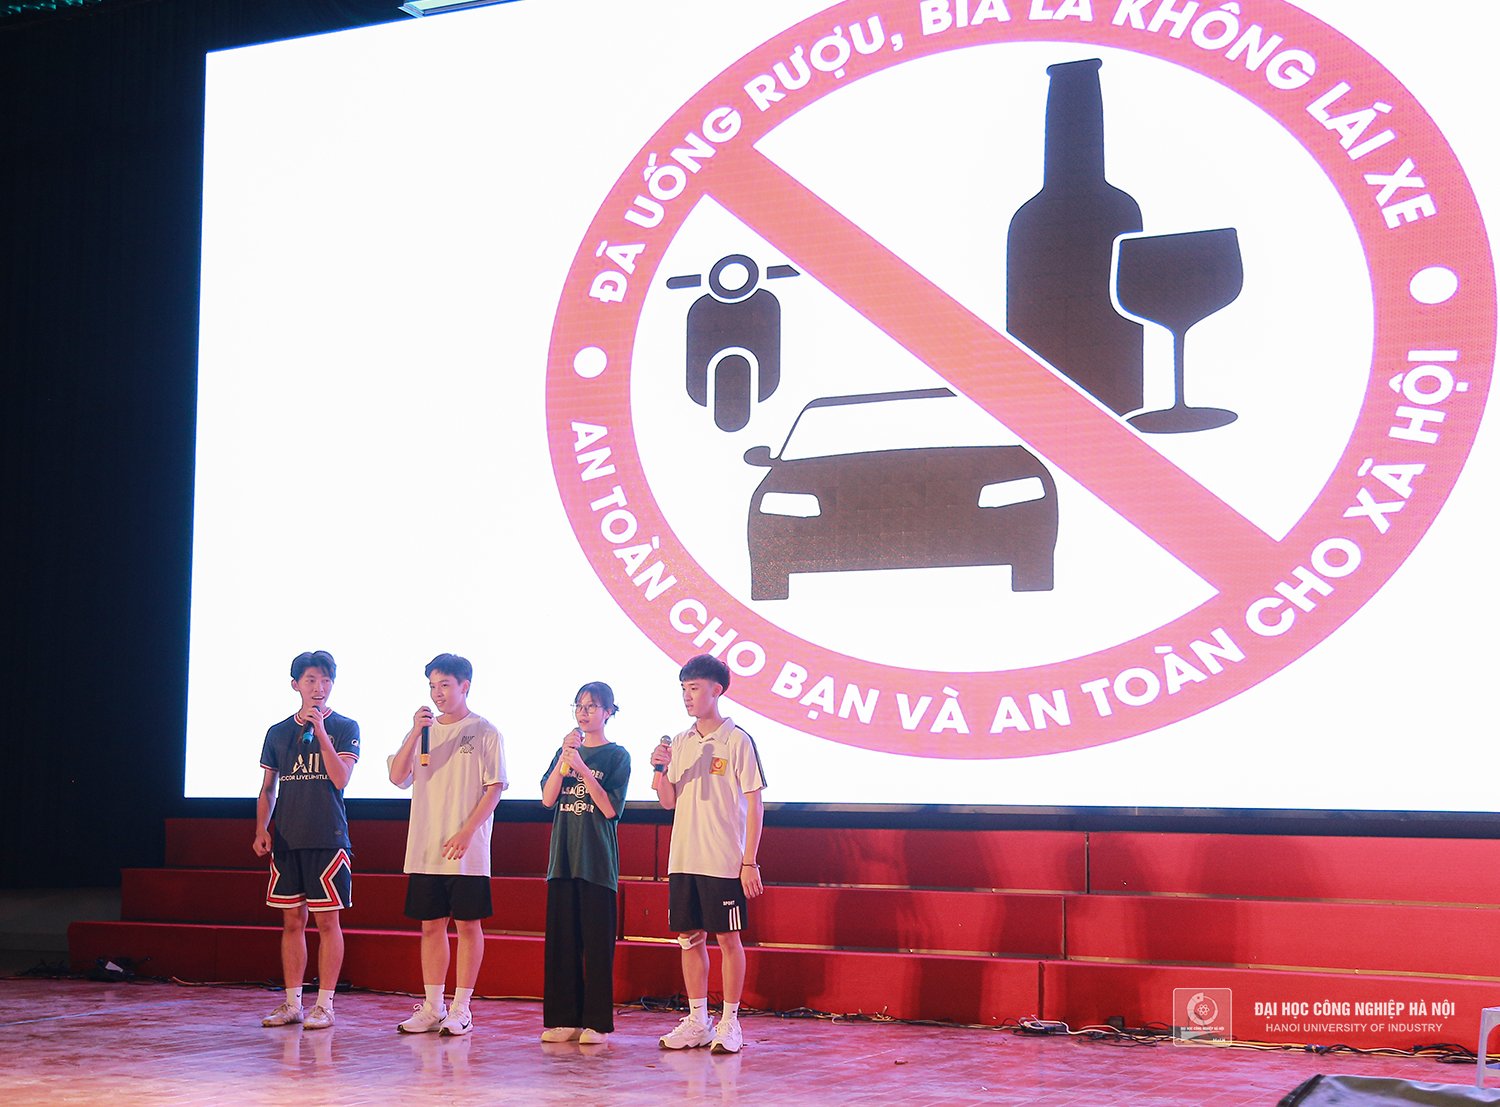 Thông điệp ý nghĩa của nhóm sinh viên trong phần thi tiểu phẩm “Đã uống rượu, bia là không lái xe. An toàn cho bạn và an toàn cho xã hội”